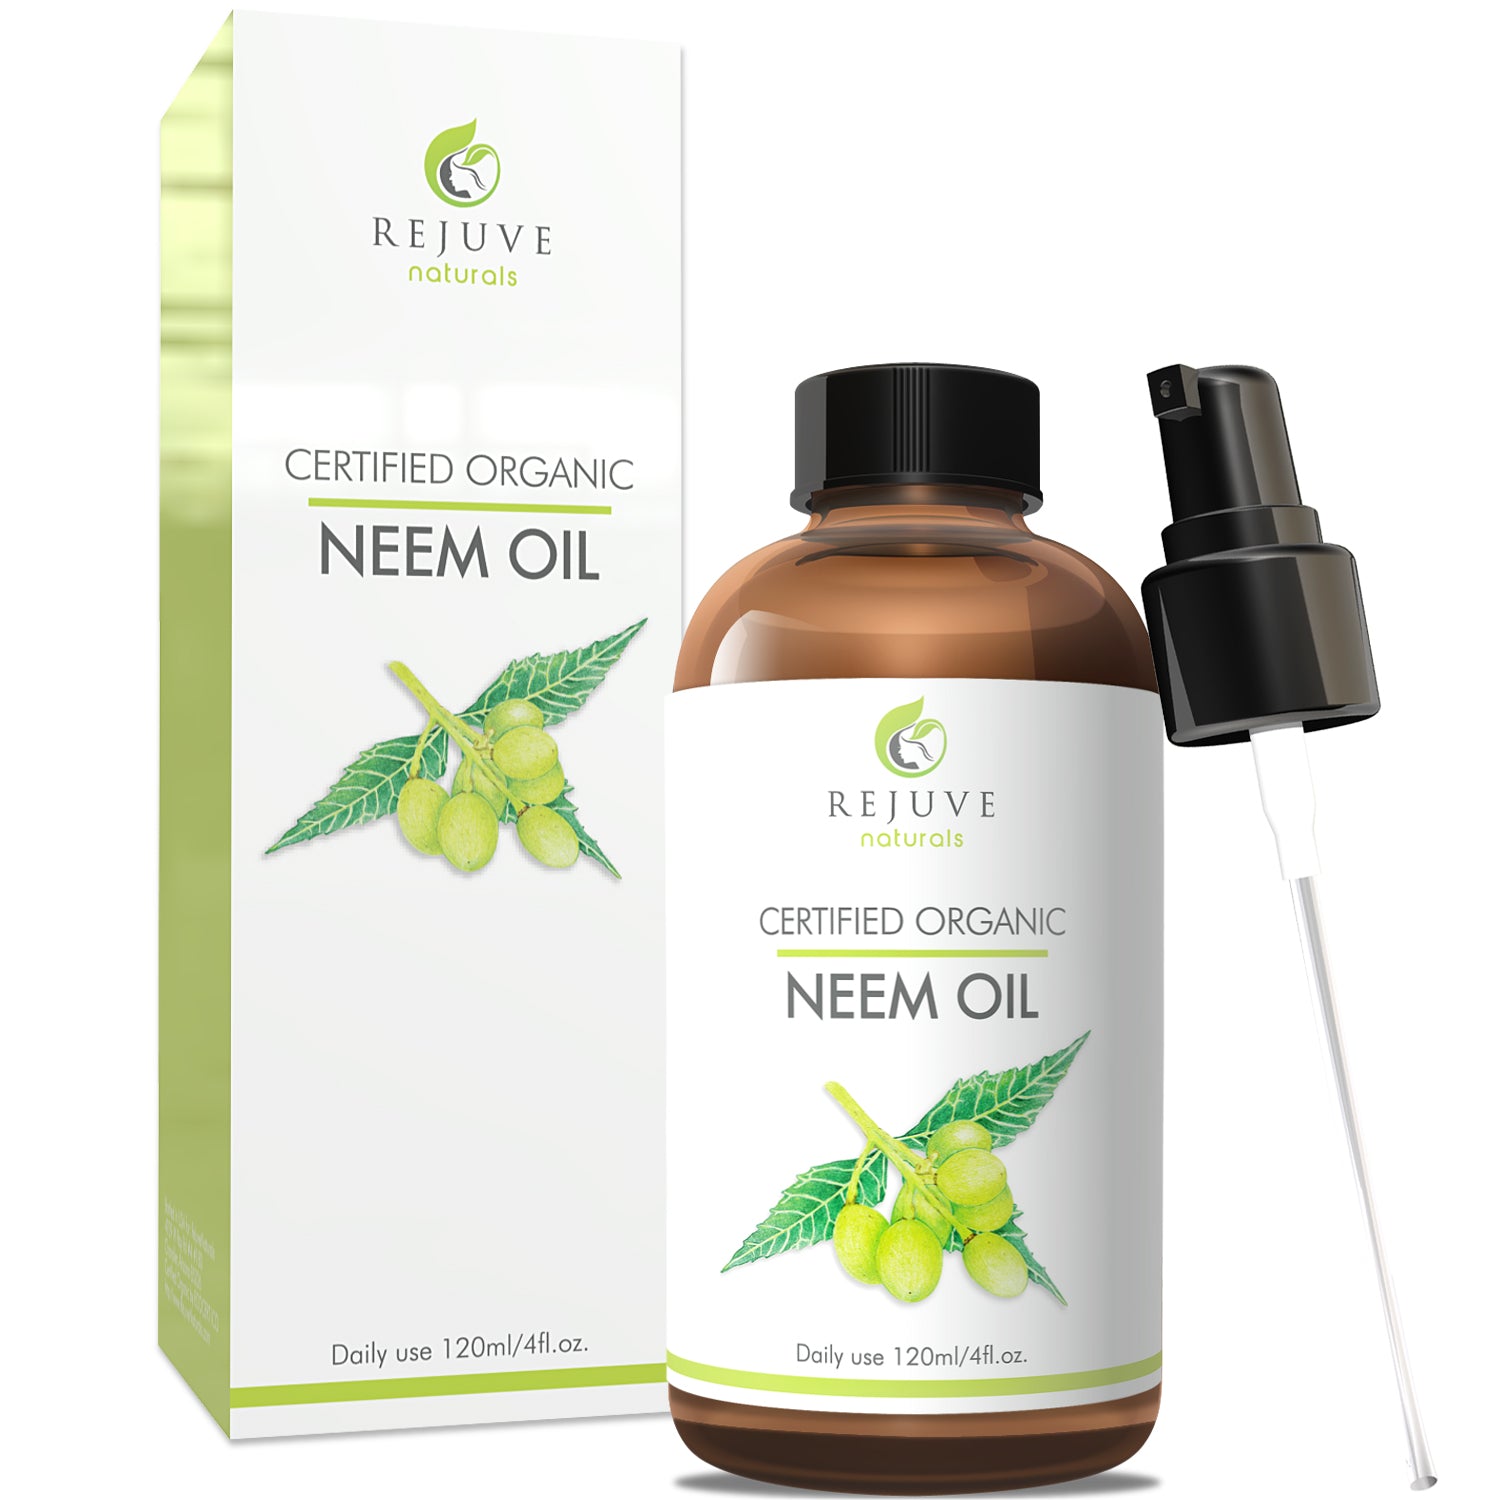 where to buy neem oil